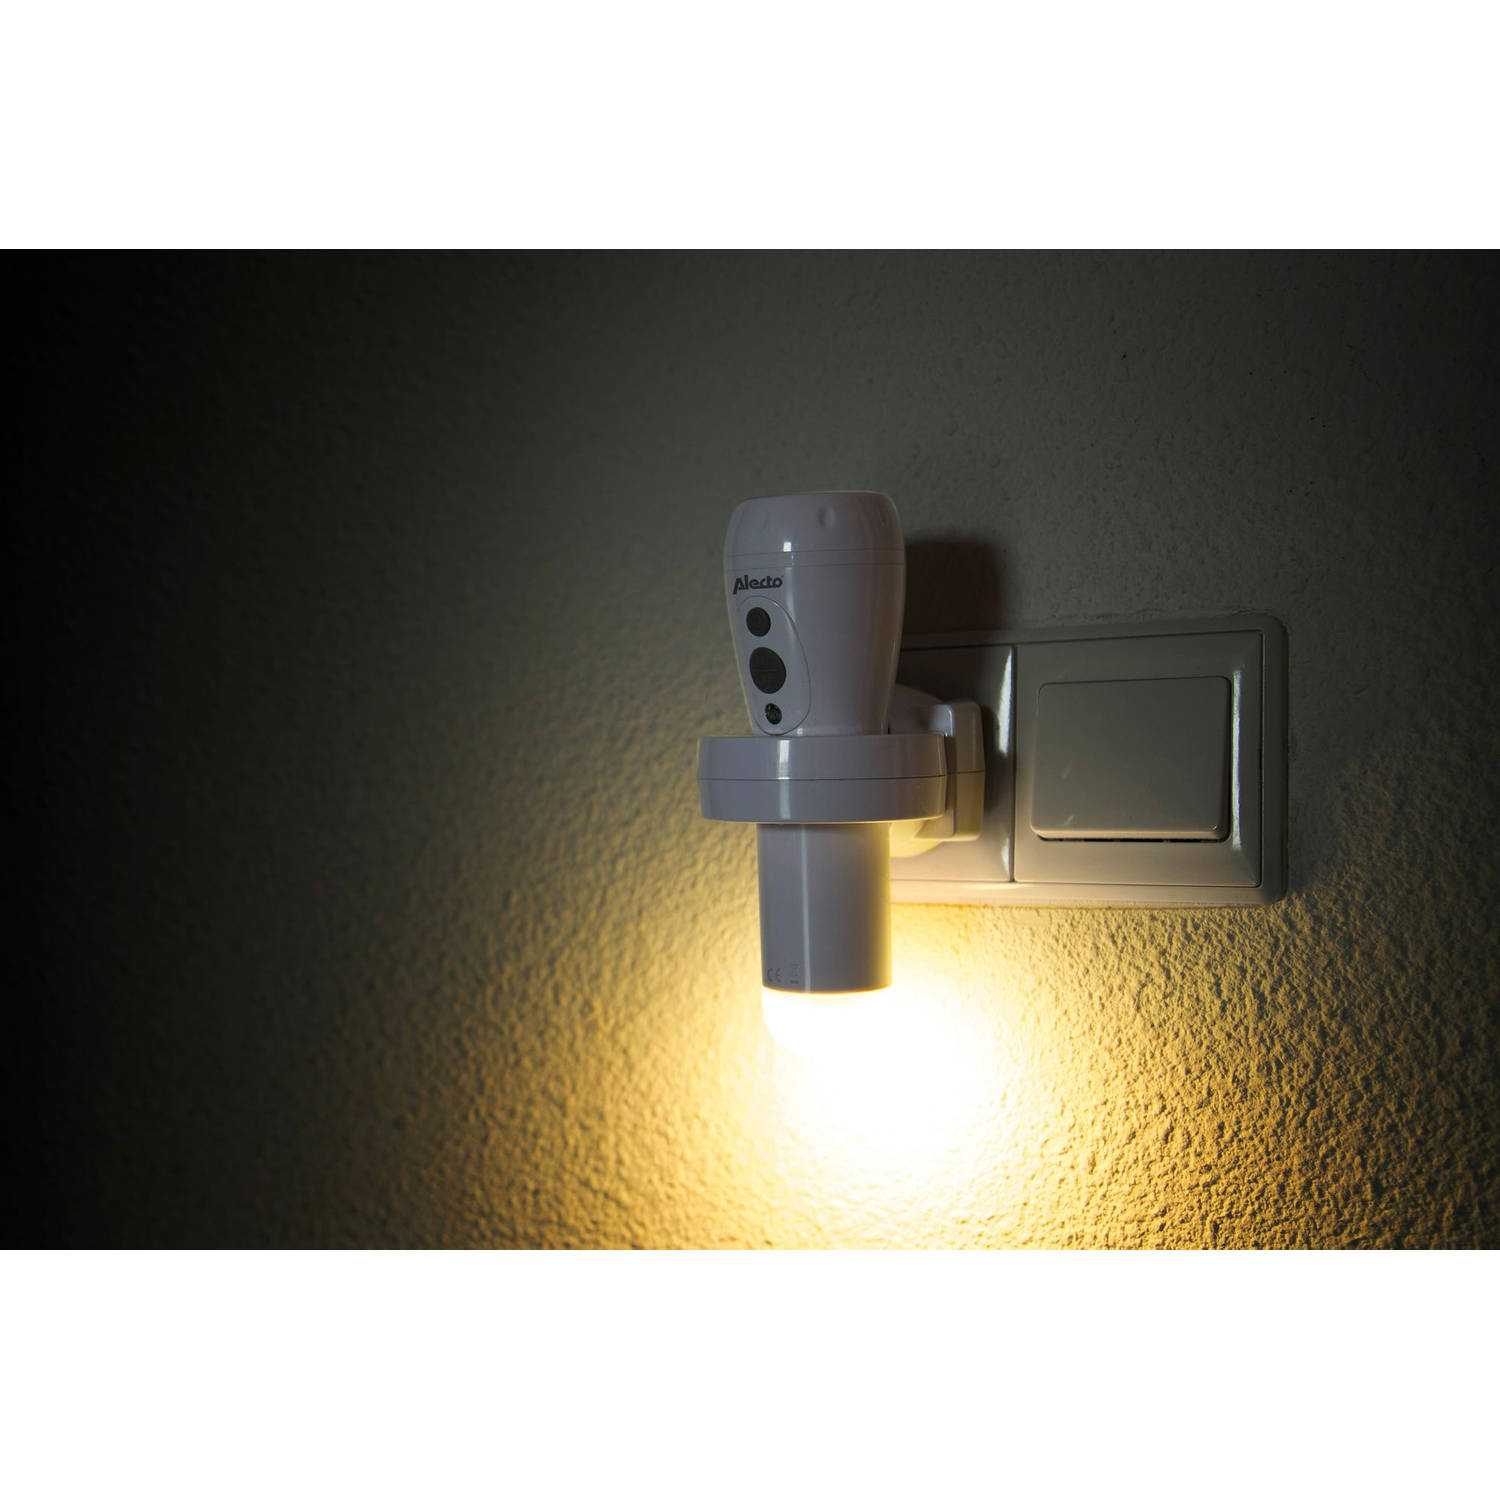 Ramkoers taart onpeilbaar Oplaadbare LED zaklamp / automatisch LED nachtlampje Alecto ATL-110 Wit |  Blokker